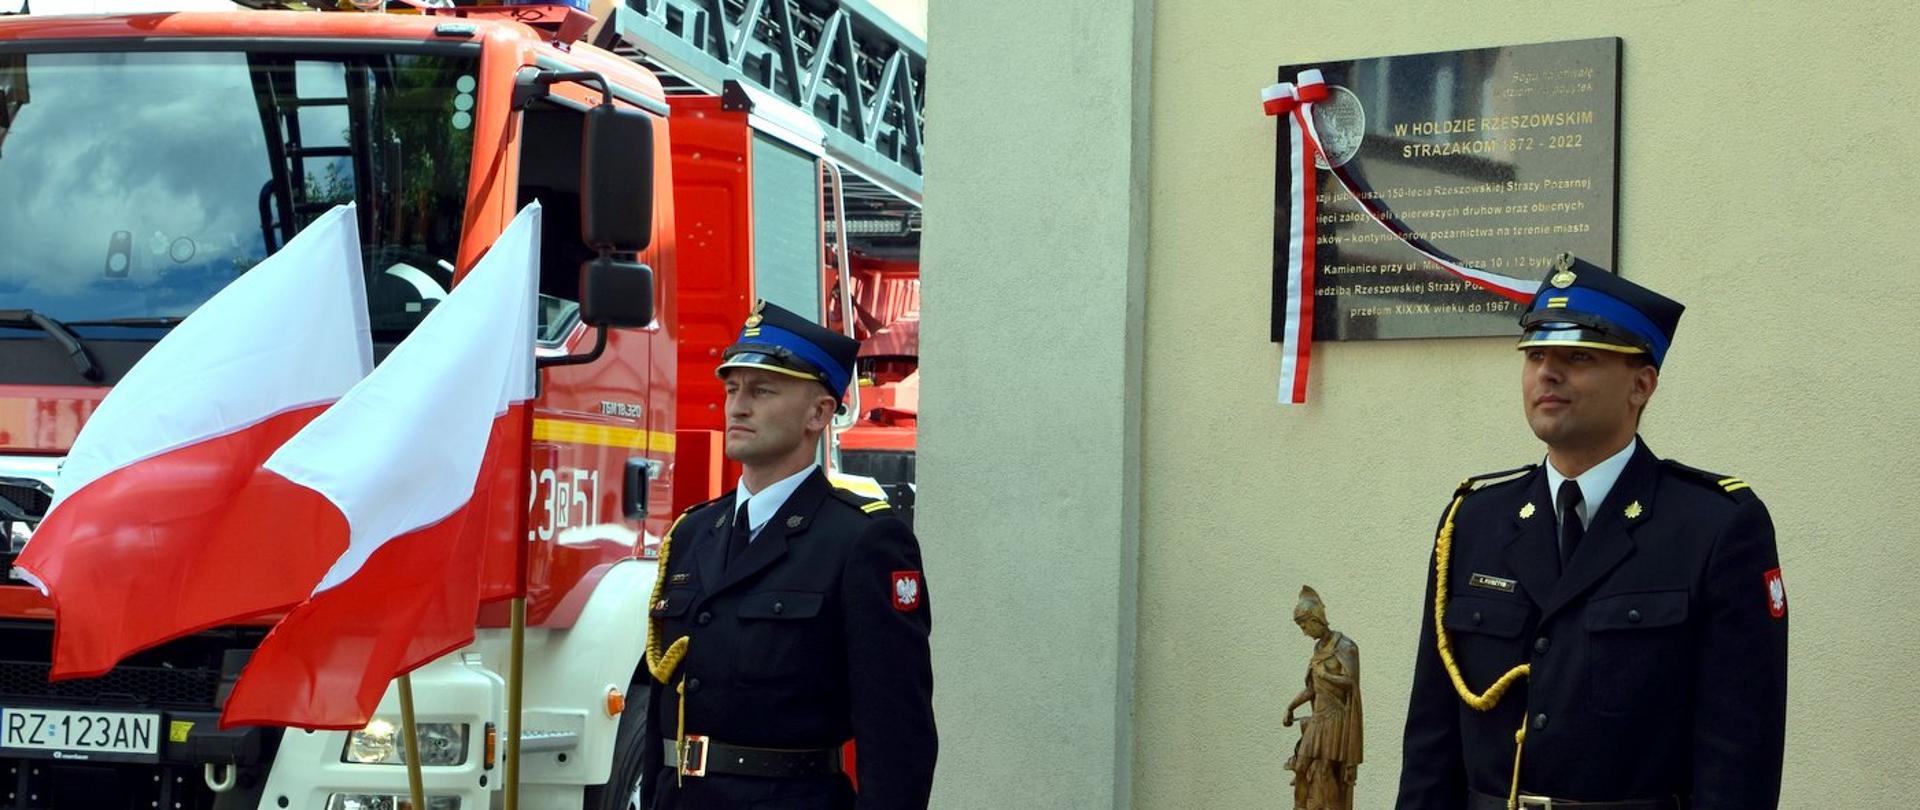 Dwóch strażaków Państwowej Straży Pożarnej pełni Wartę honorową przy tablicy pamiątkowej. W tle widać samochód pożarniczy.